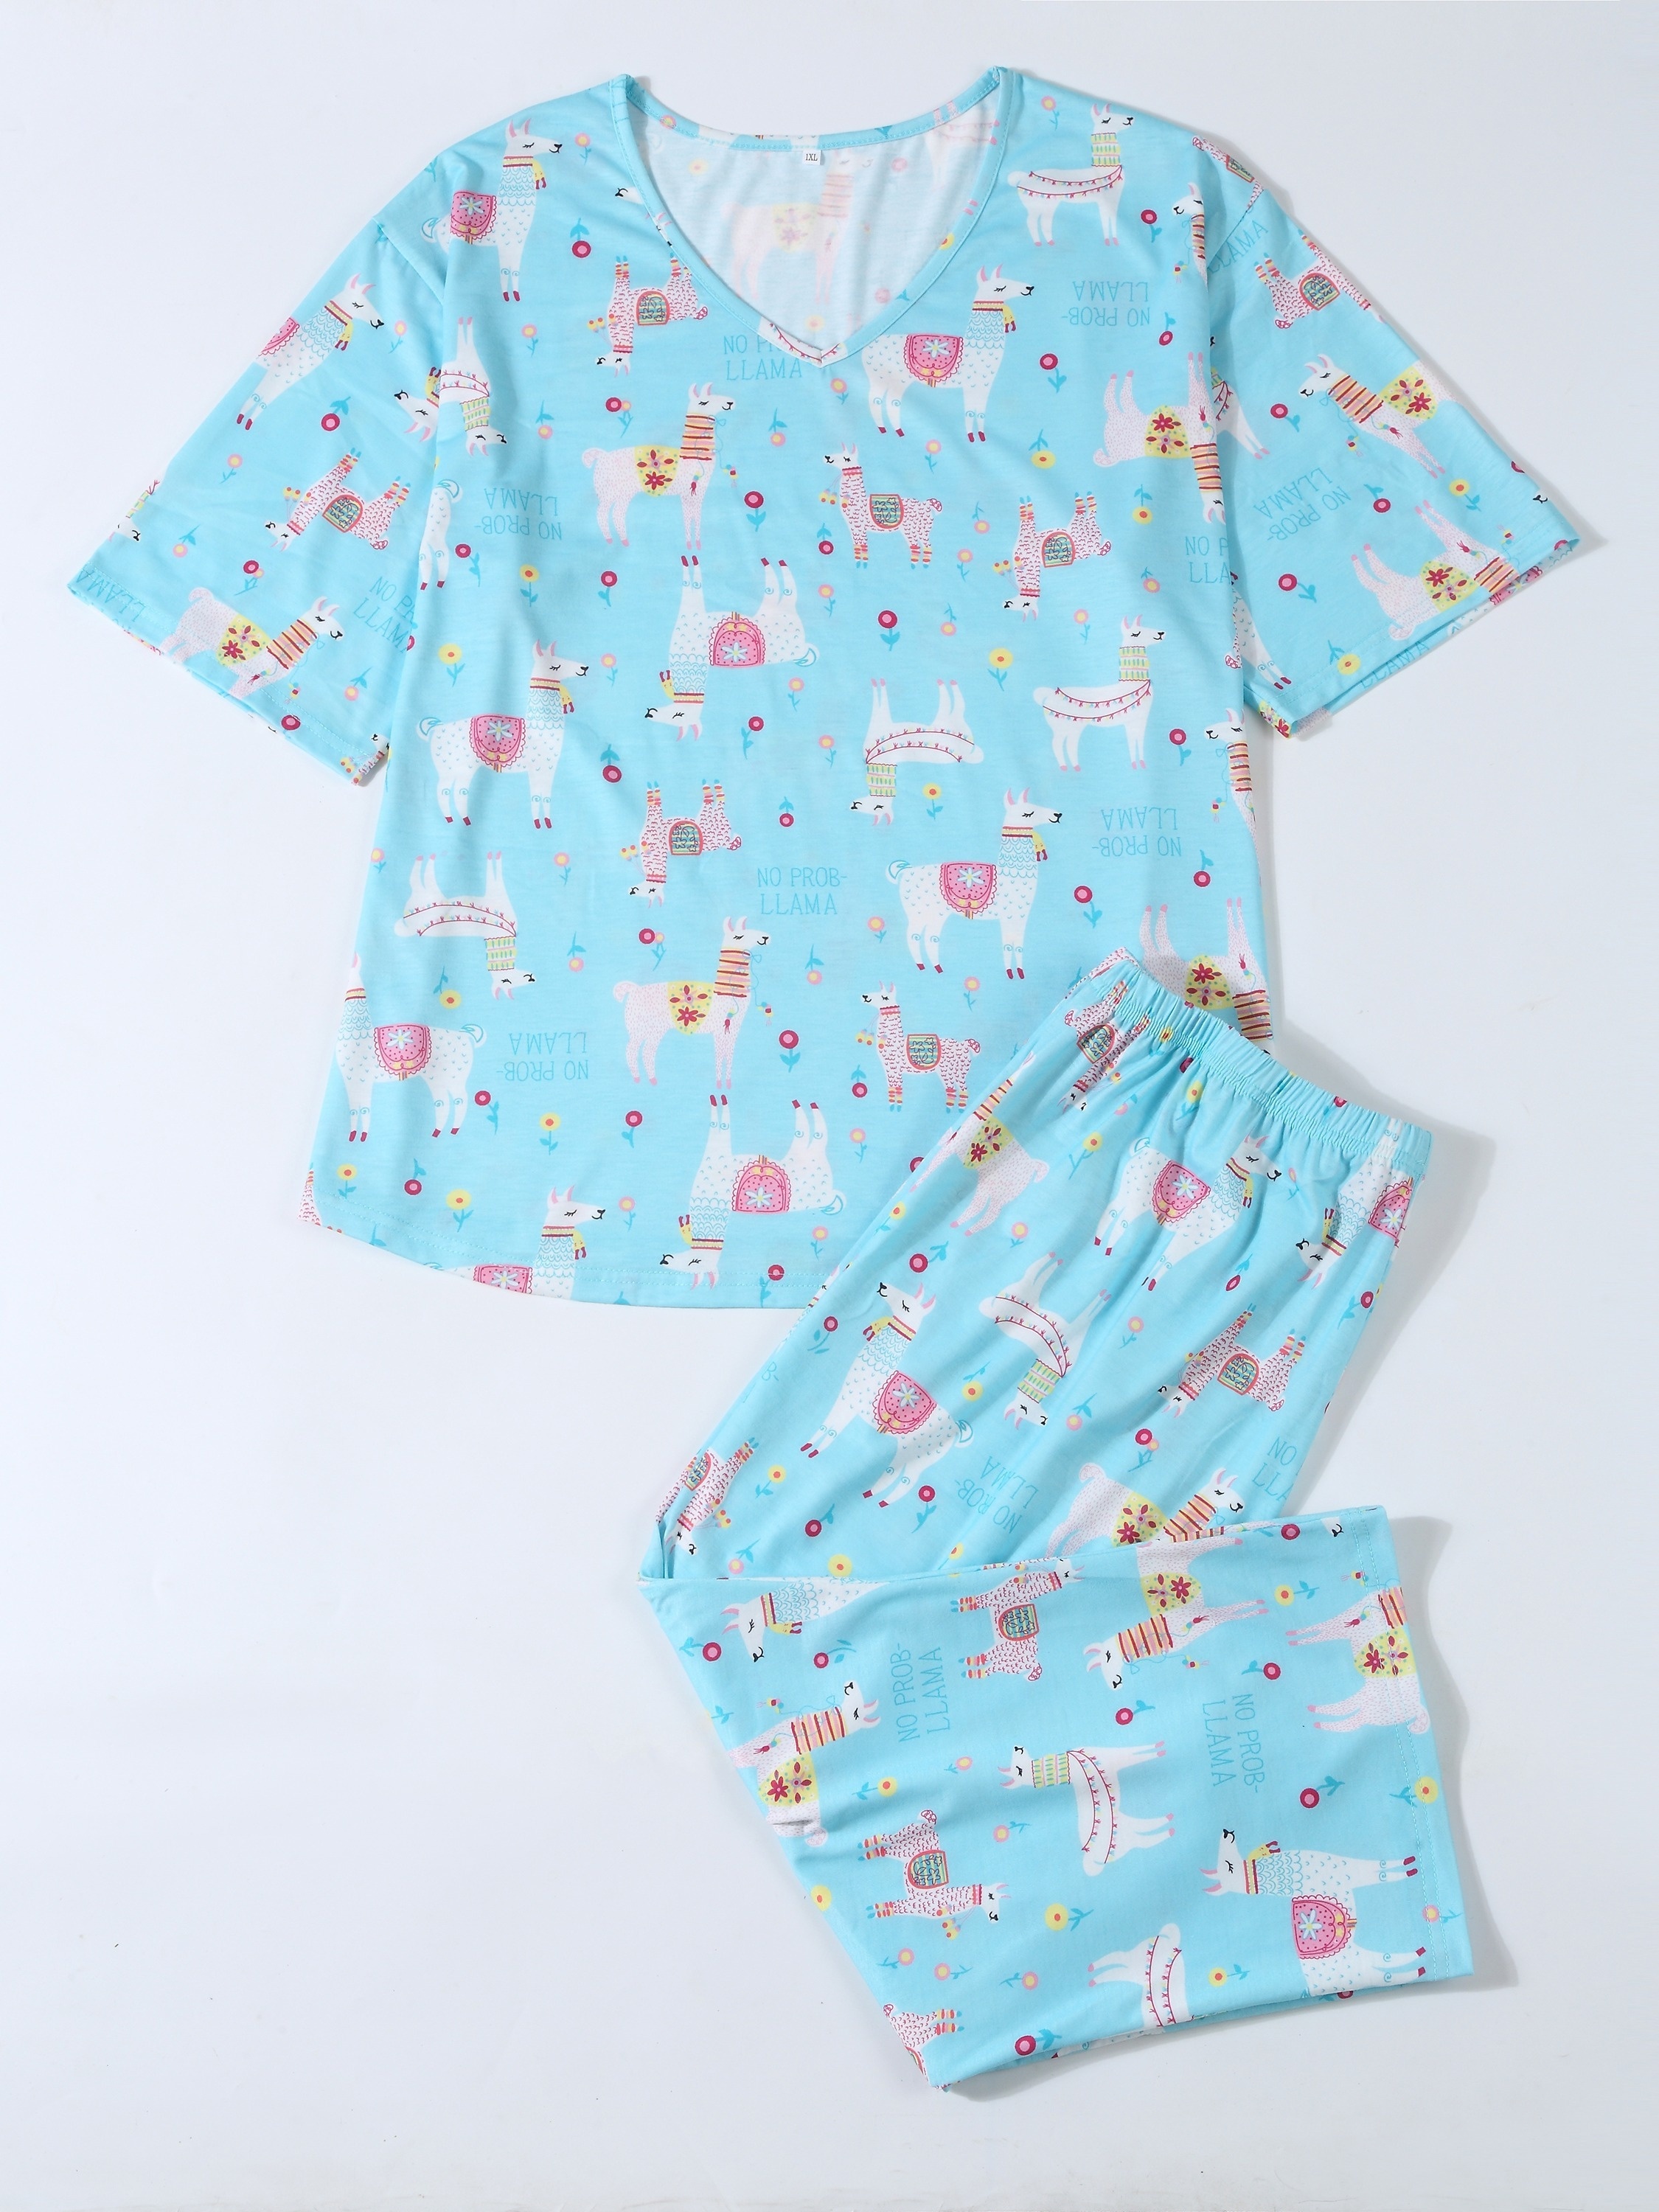 Cheetah Print Capri Pajama Set